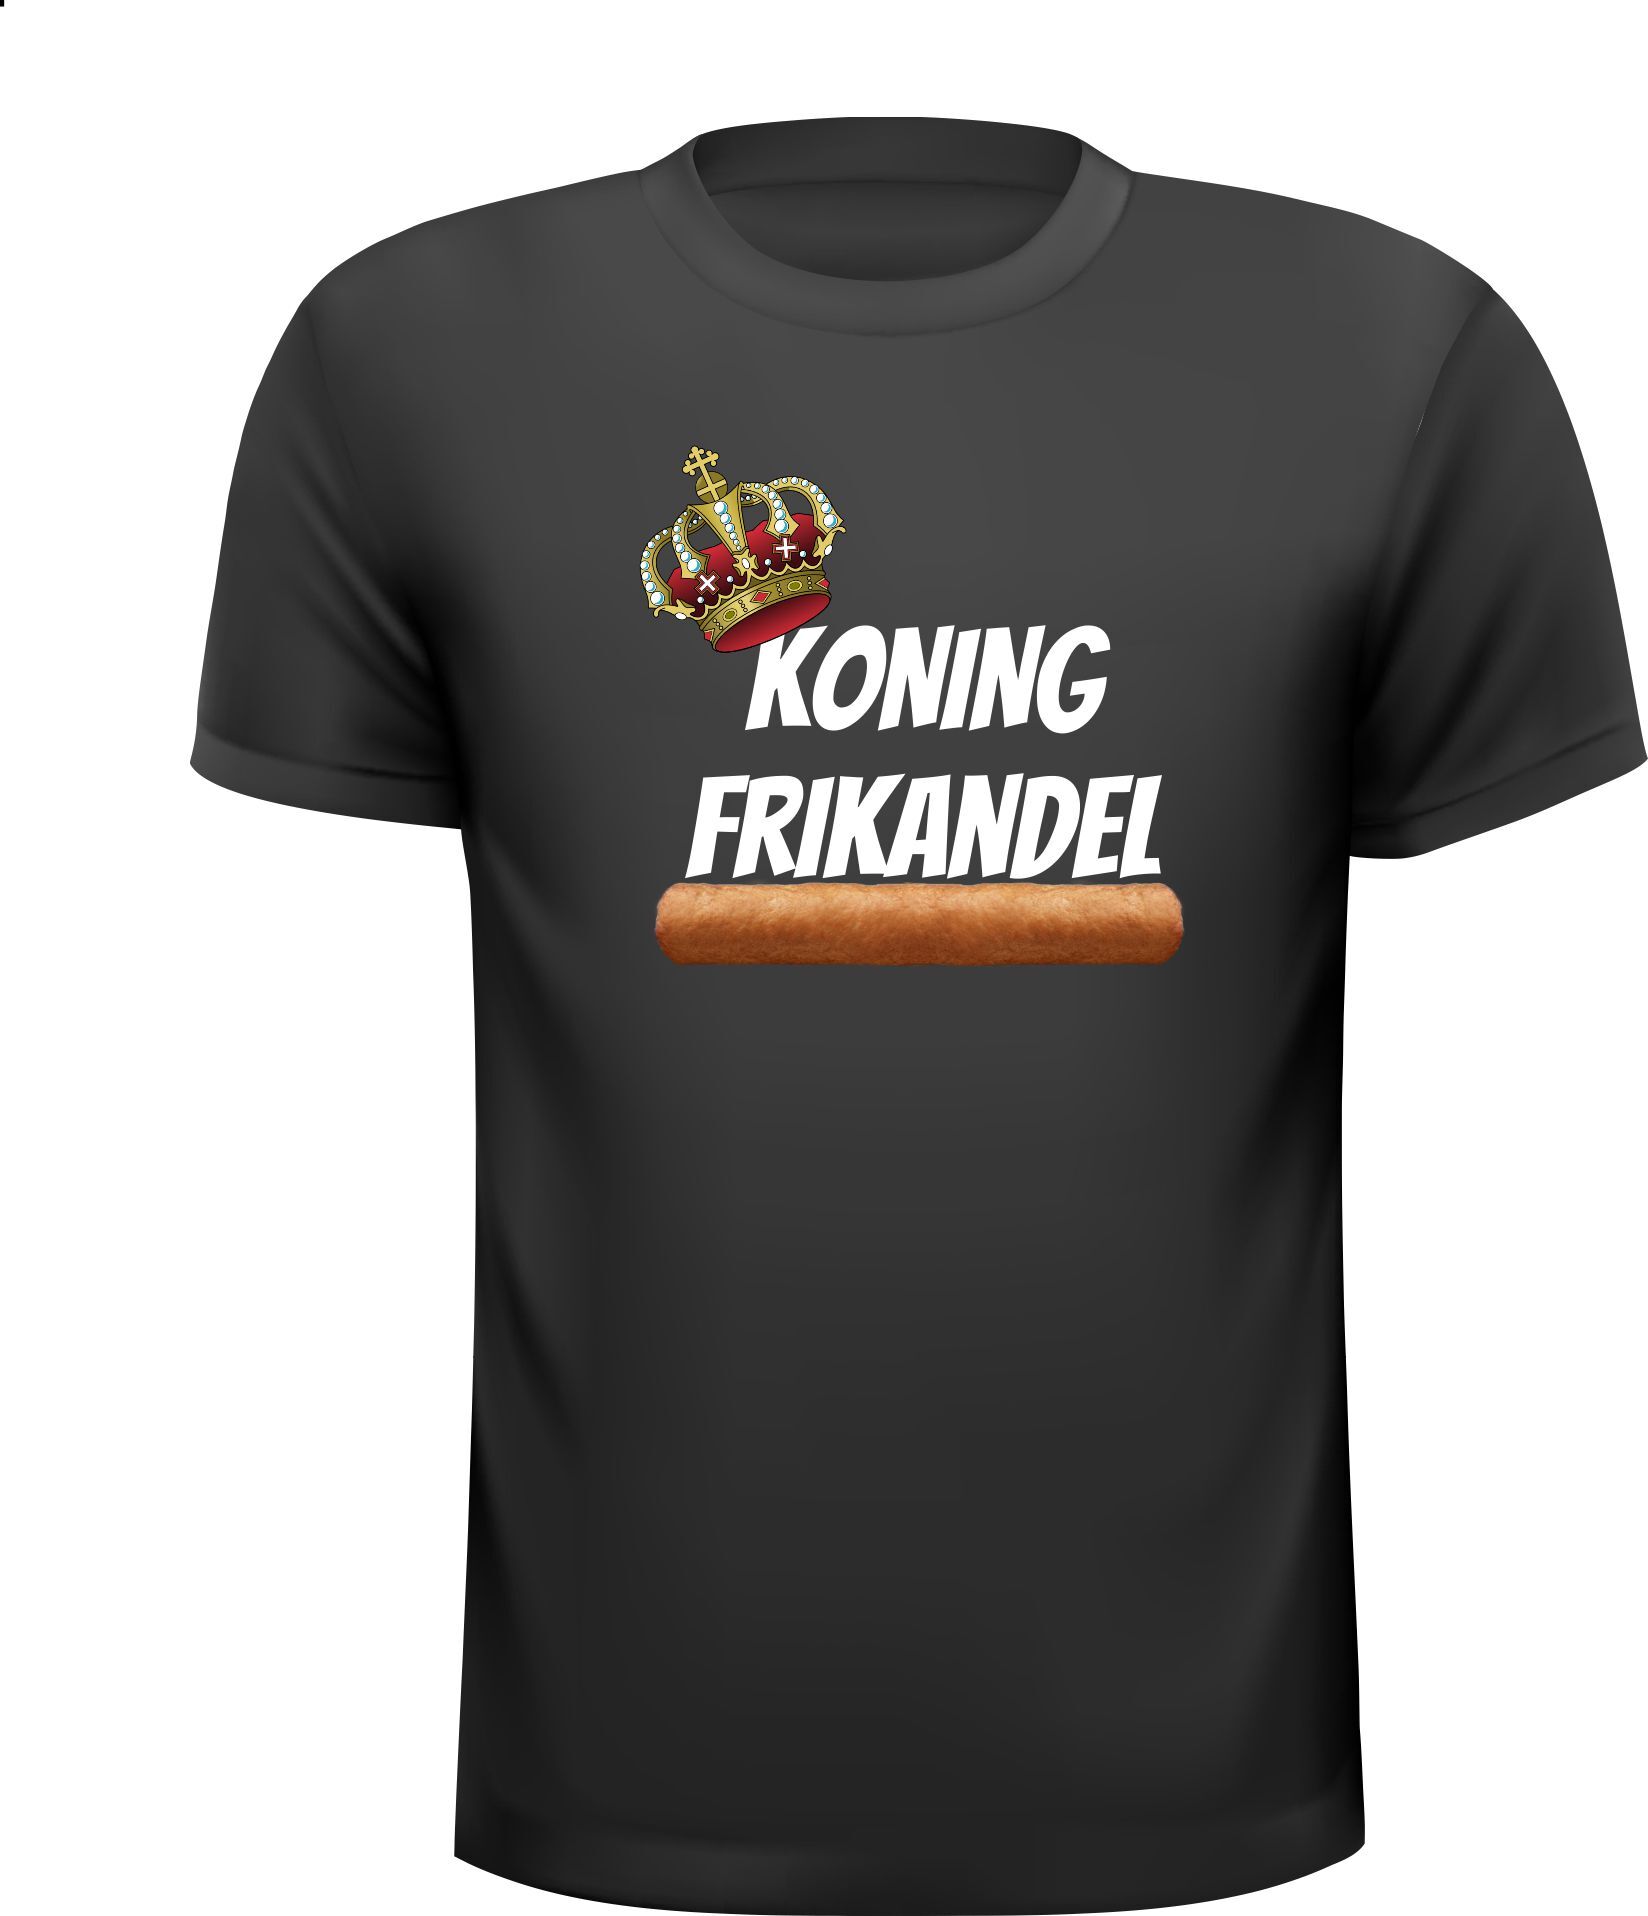 Koning frikandel T-shirt